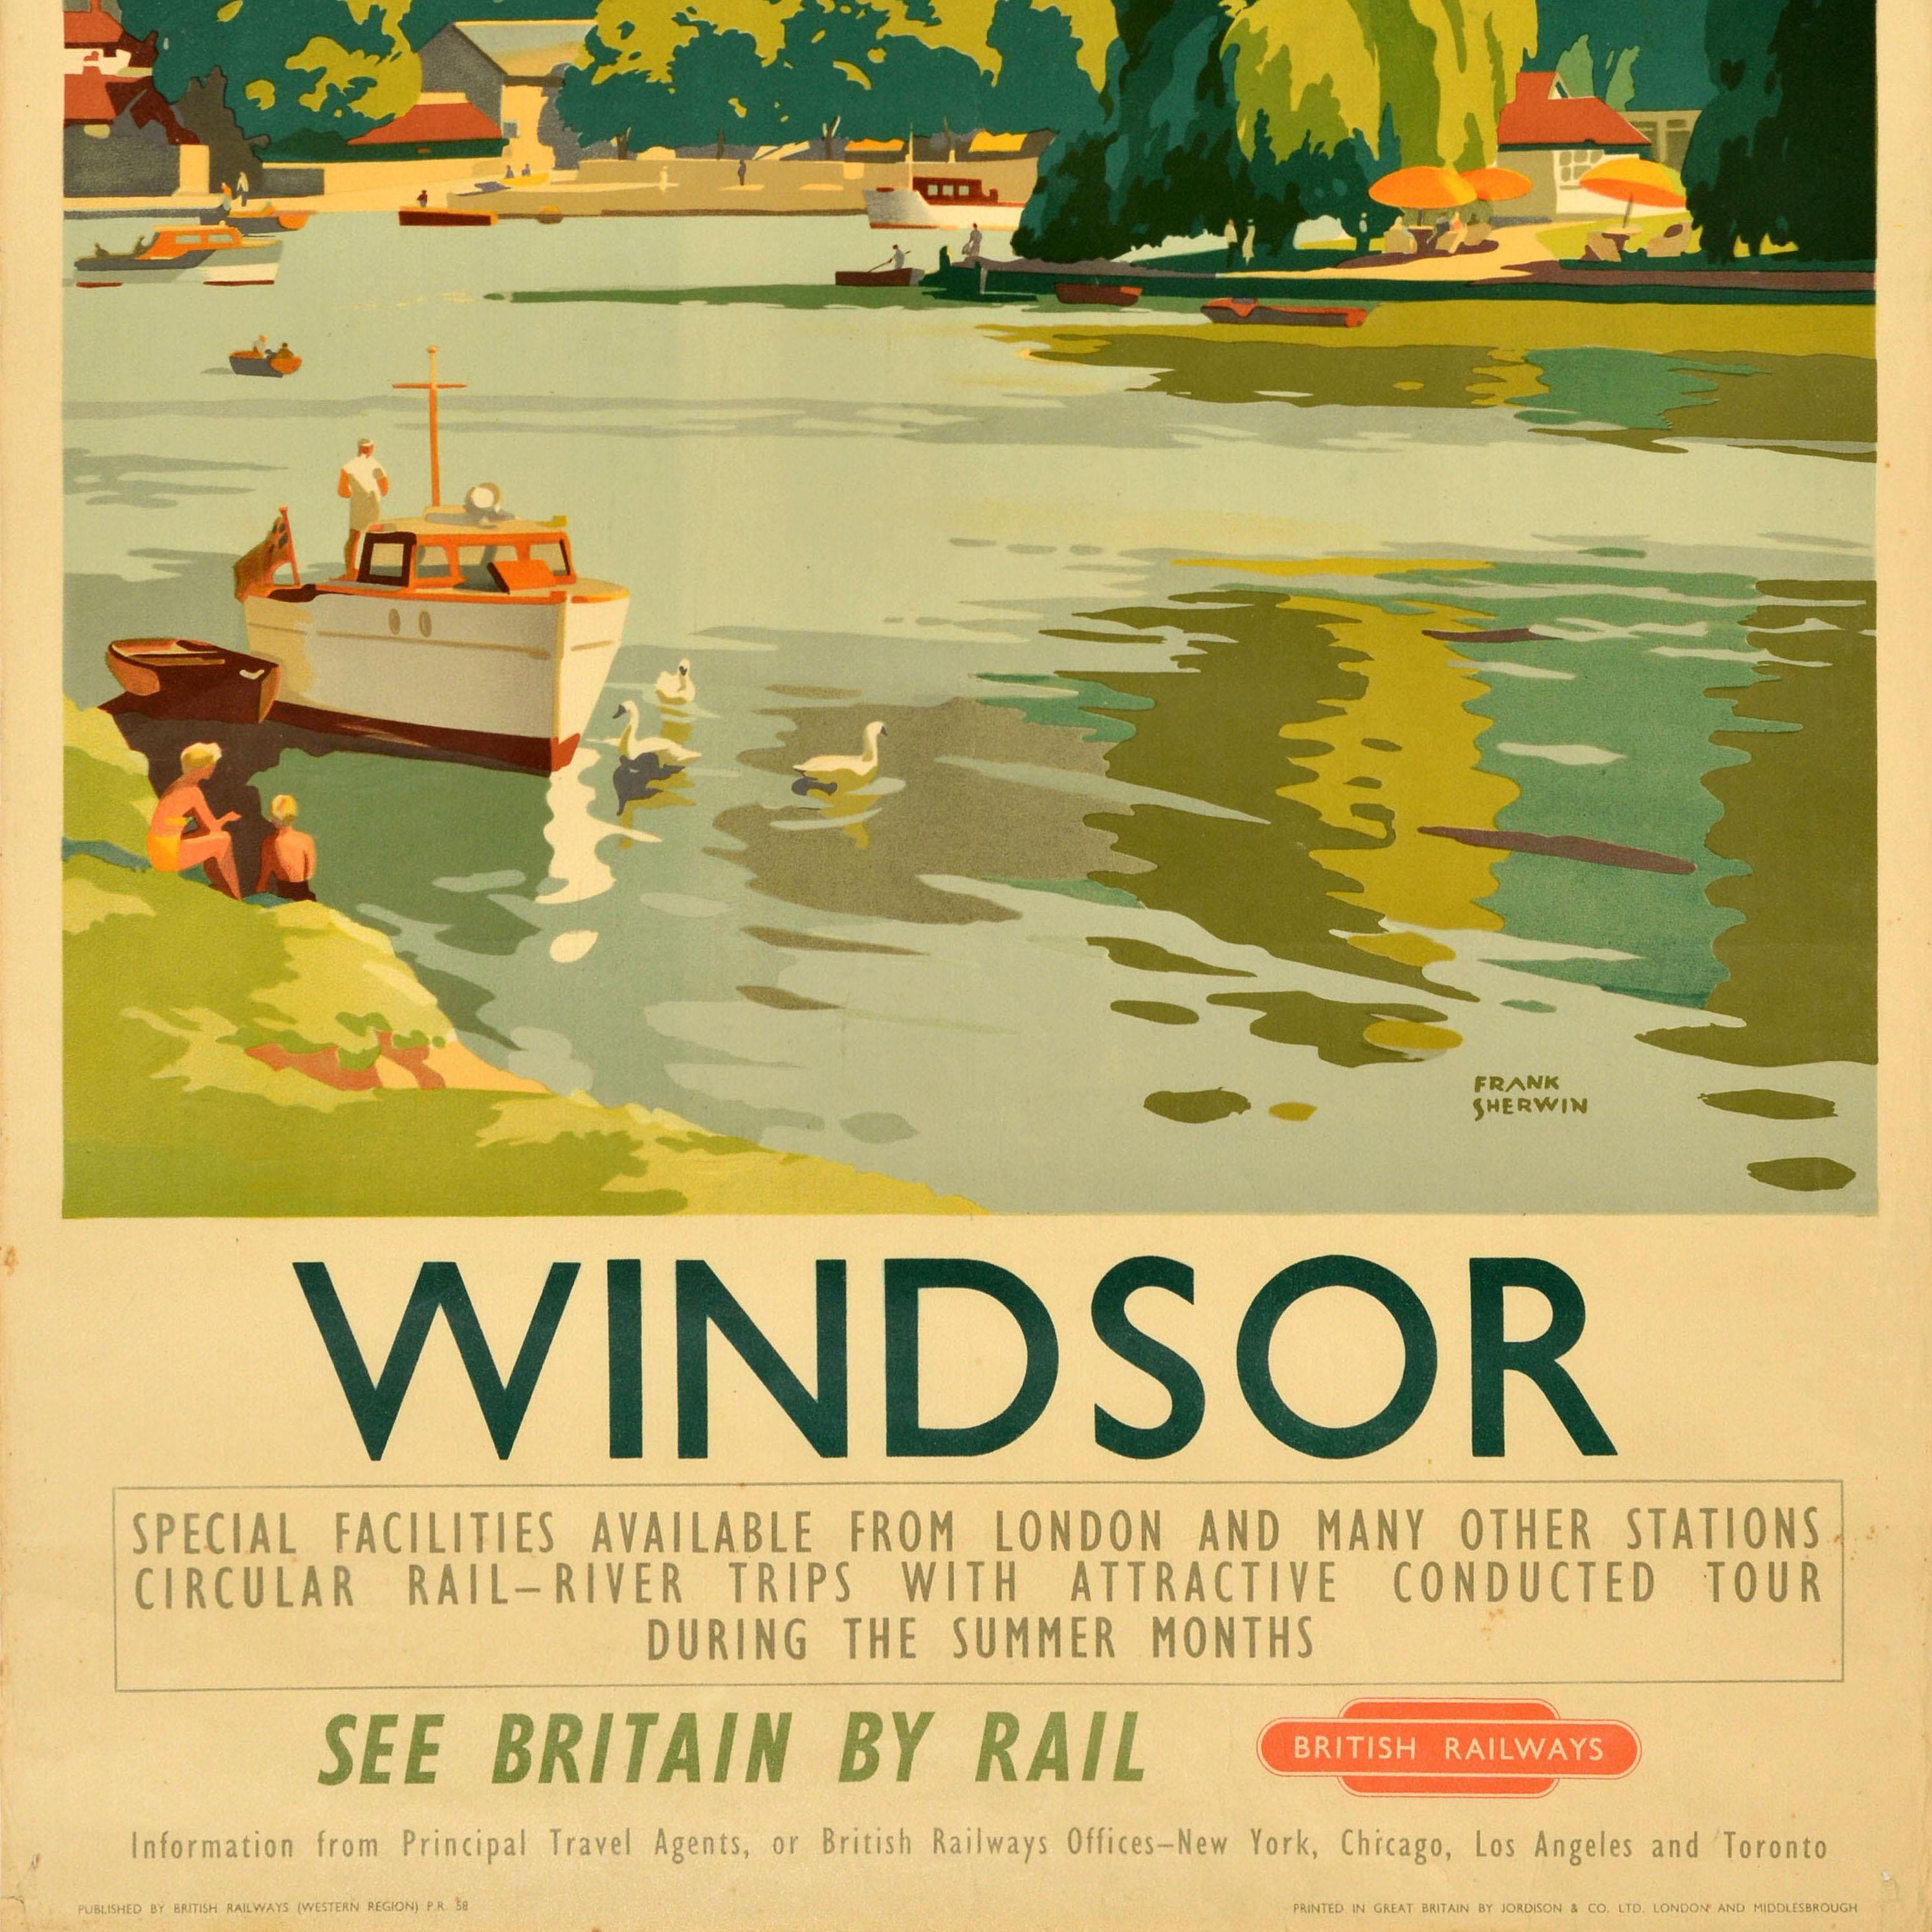 Affiche de voyage vintage originale - Windsor See Britain by Train British Railways - comportant une illustration de Frank Sherwin (1896-1986) représentant une vue du château historique de Windsor avec des personnes sur les rives de la Tamise et des